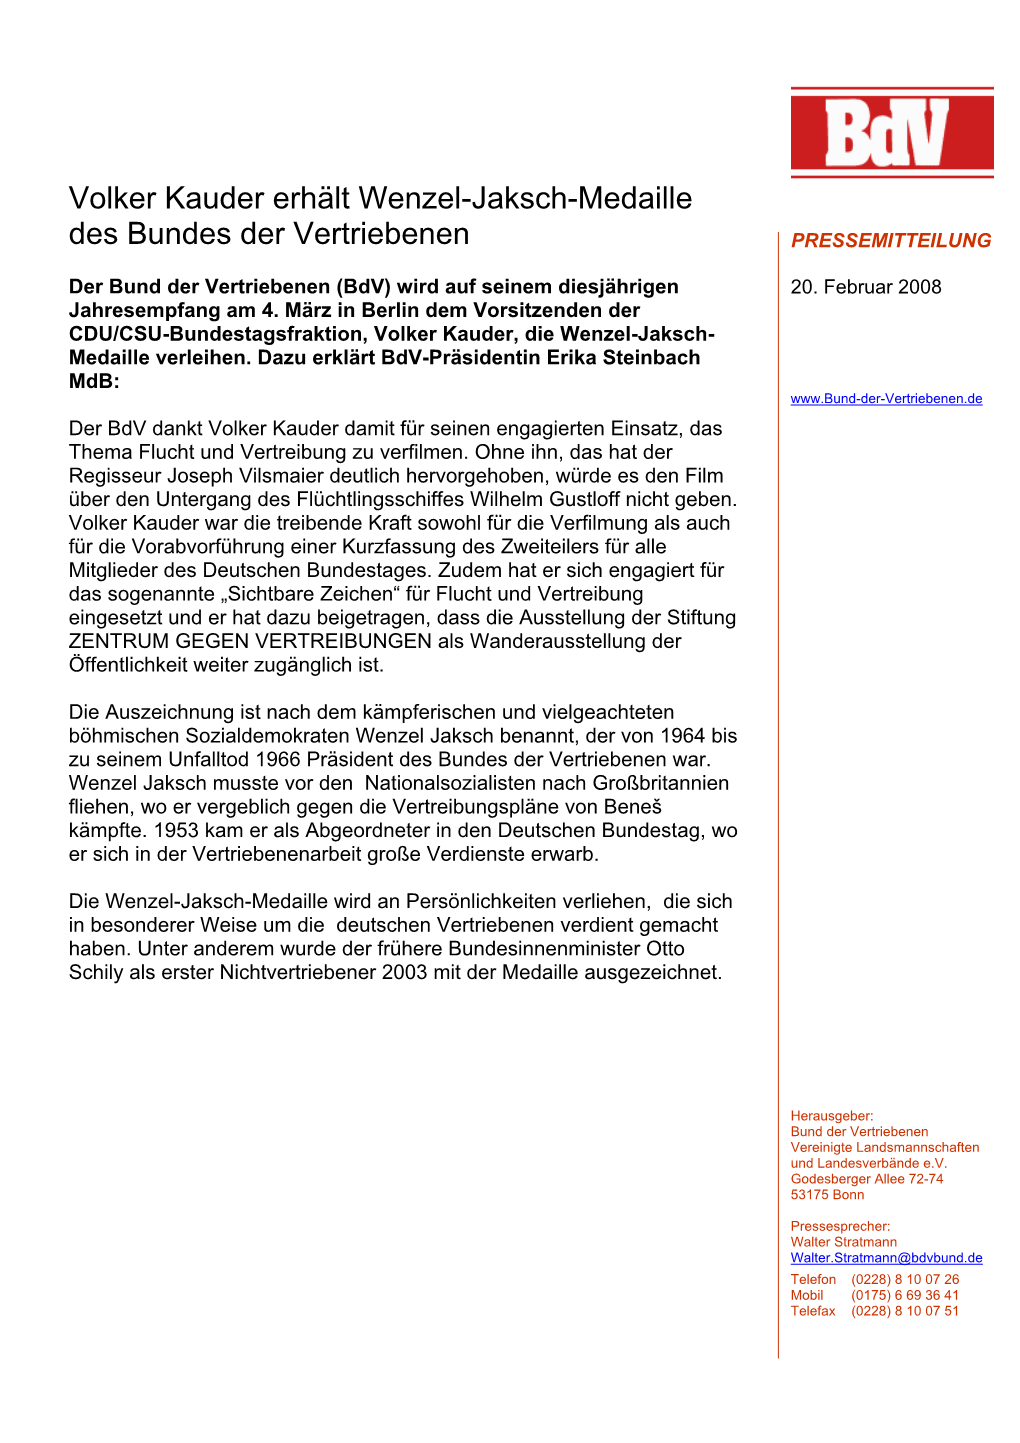 Volker Kauder Erhält Wenzel-Jaksch-Medaille Des Bundes Der Vertriebenen PRESSEMITTEILUNG